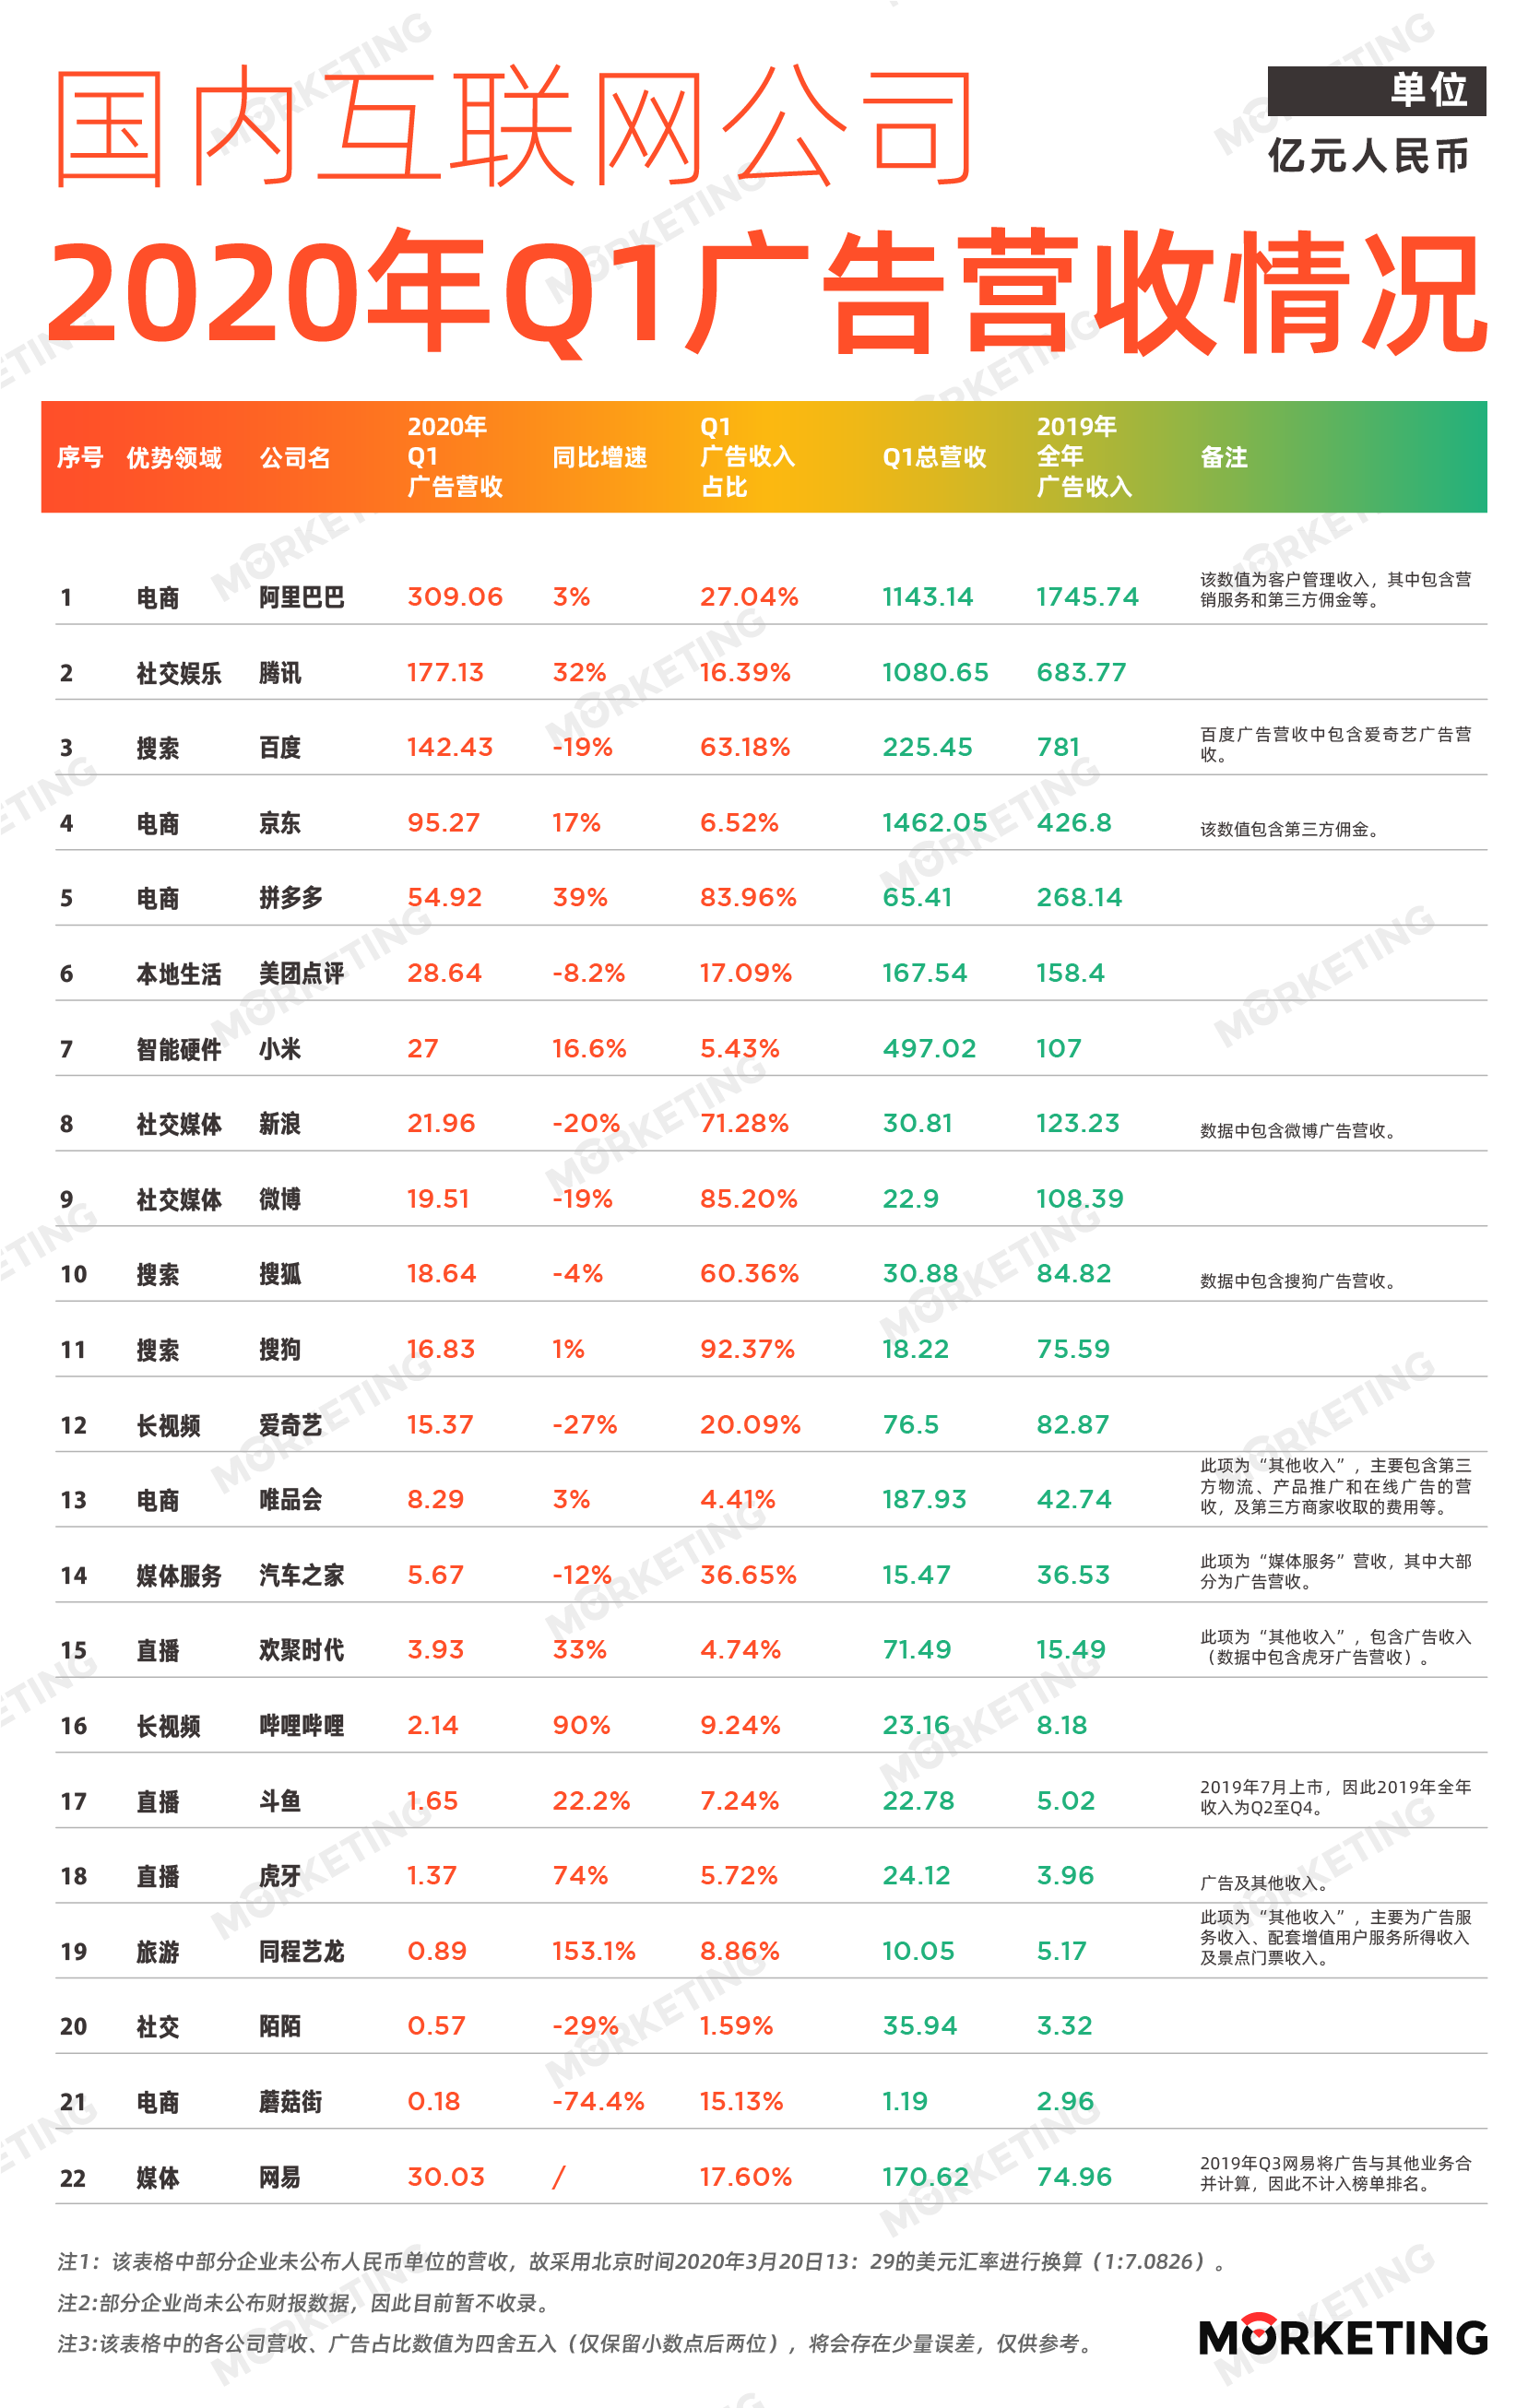 中国互联网公司广告收入榜 |2020年Q1